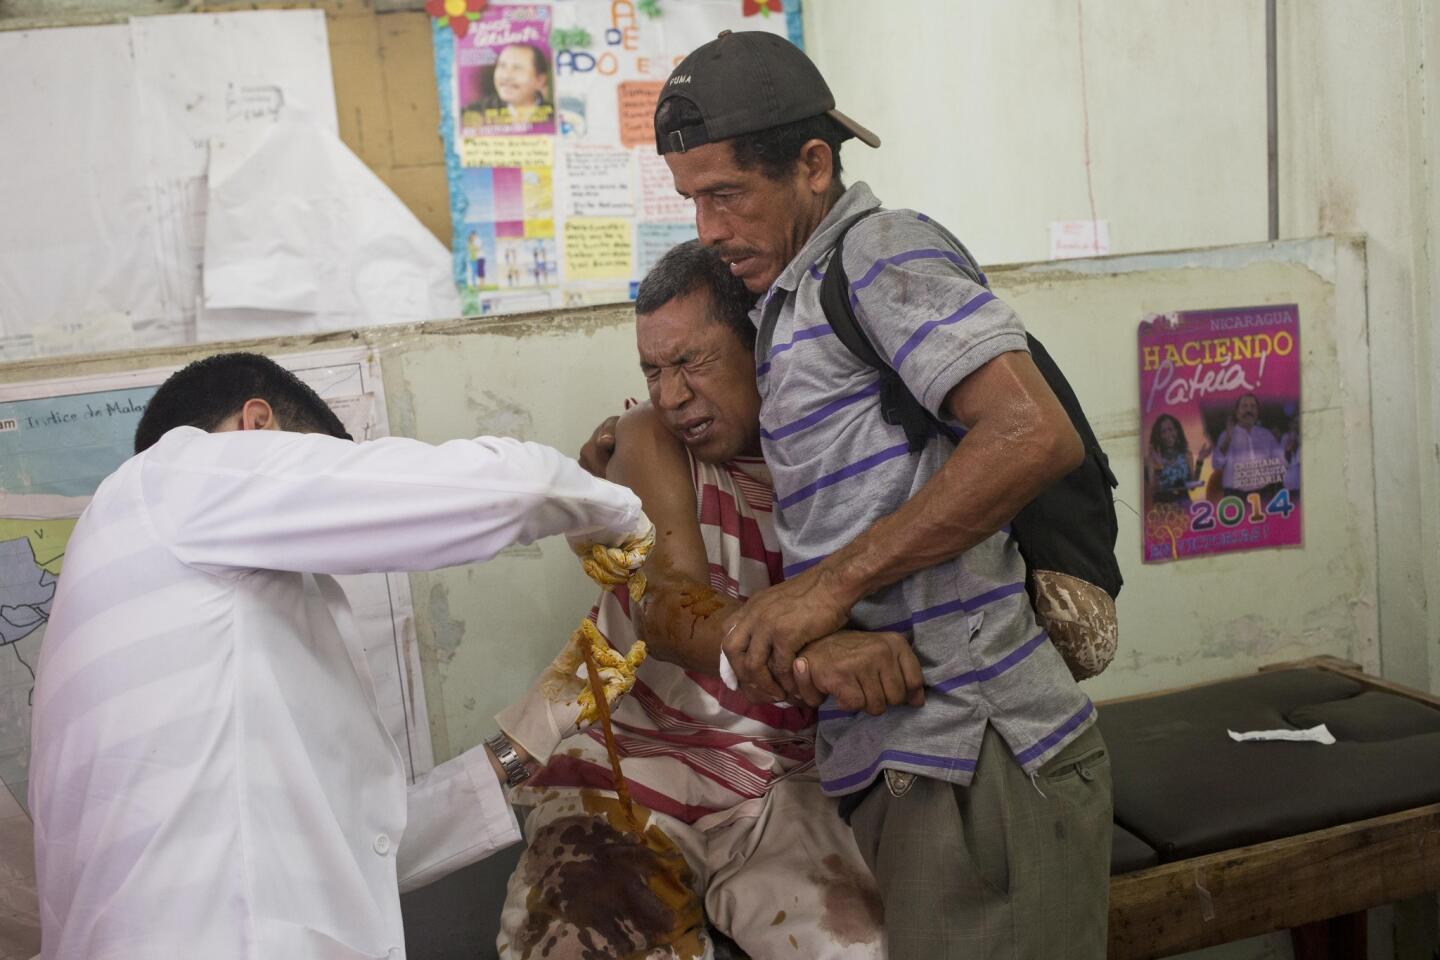 Rosman Flores, miembro del consejo de ancianos del pueblo miskito, es sostenido por un amigo mientras el doctor retira un proyectil que lo hirió en un enfrentamiento armado en Waspam, Nicaragua.